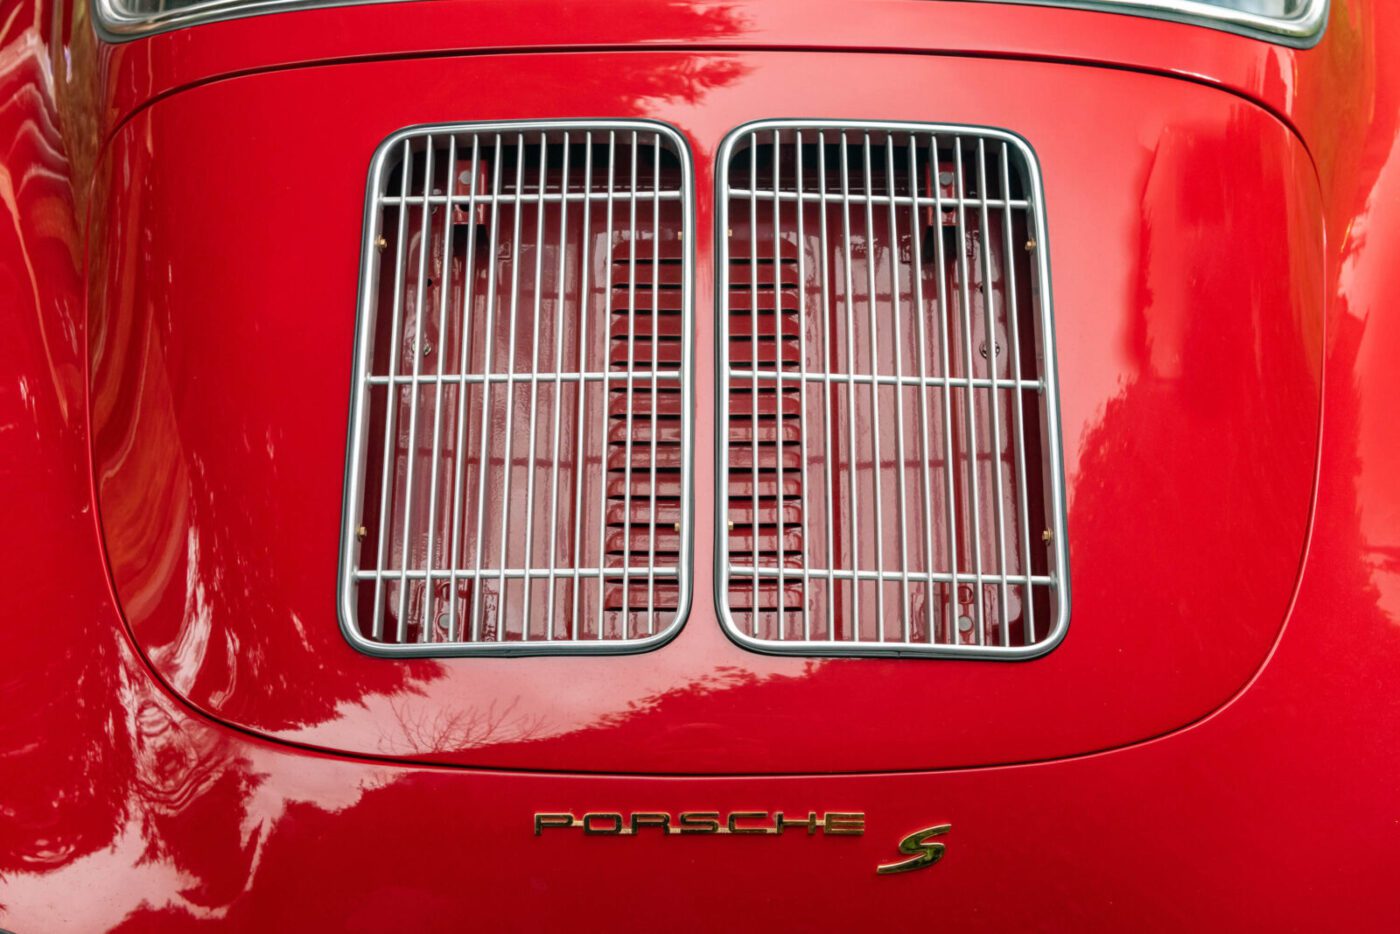 Porsche 356s bonnet